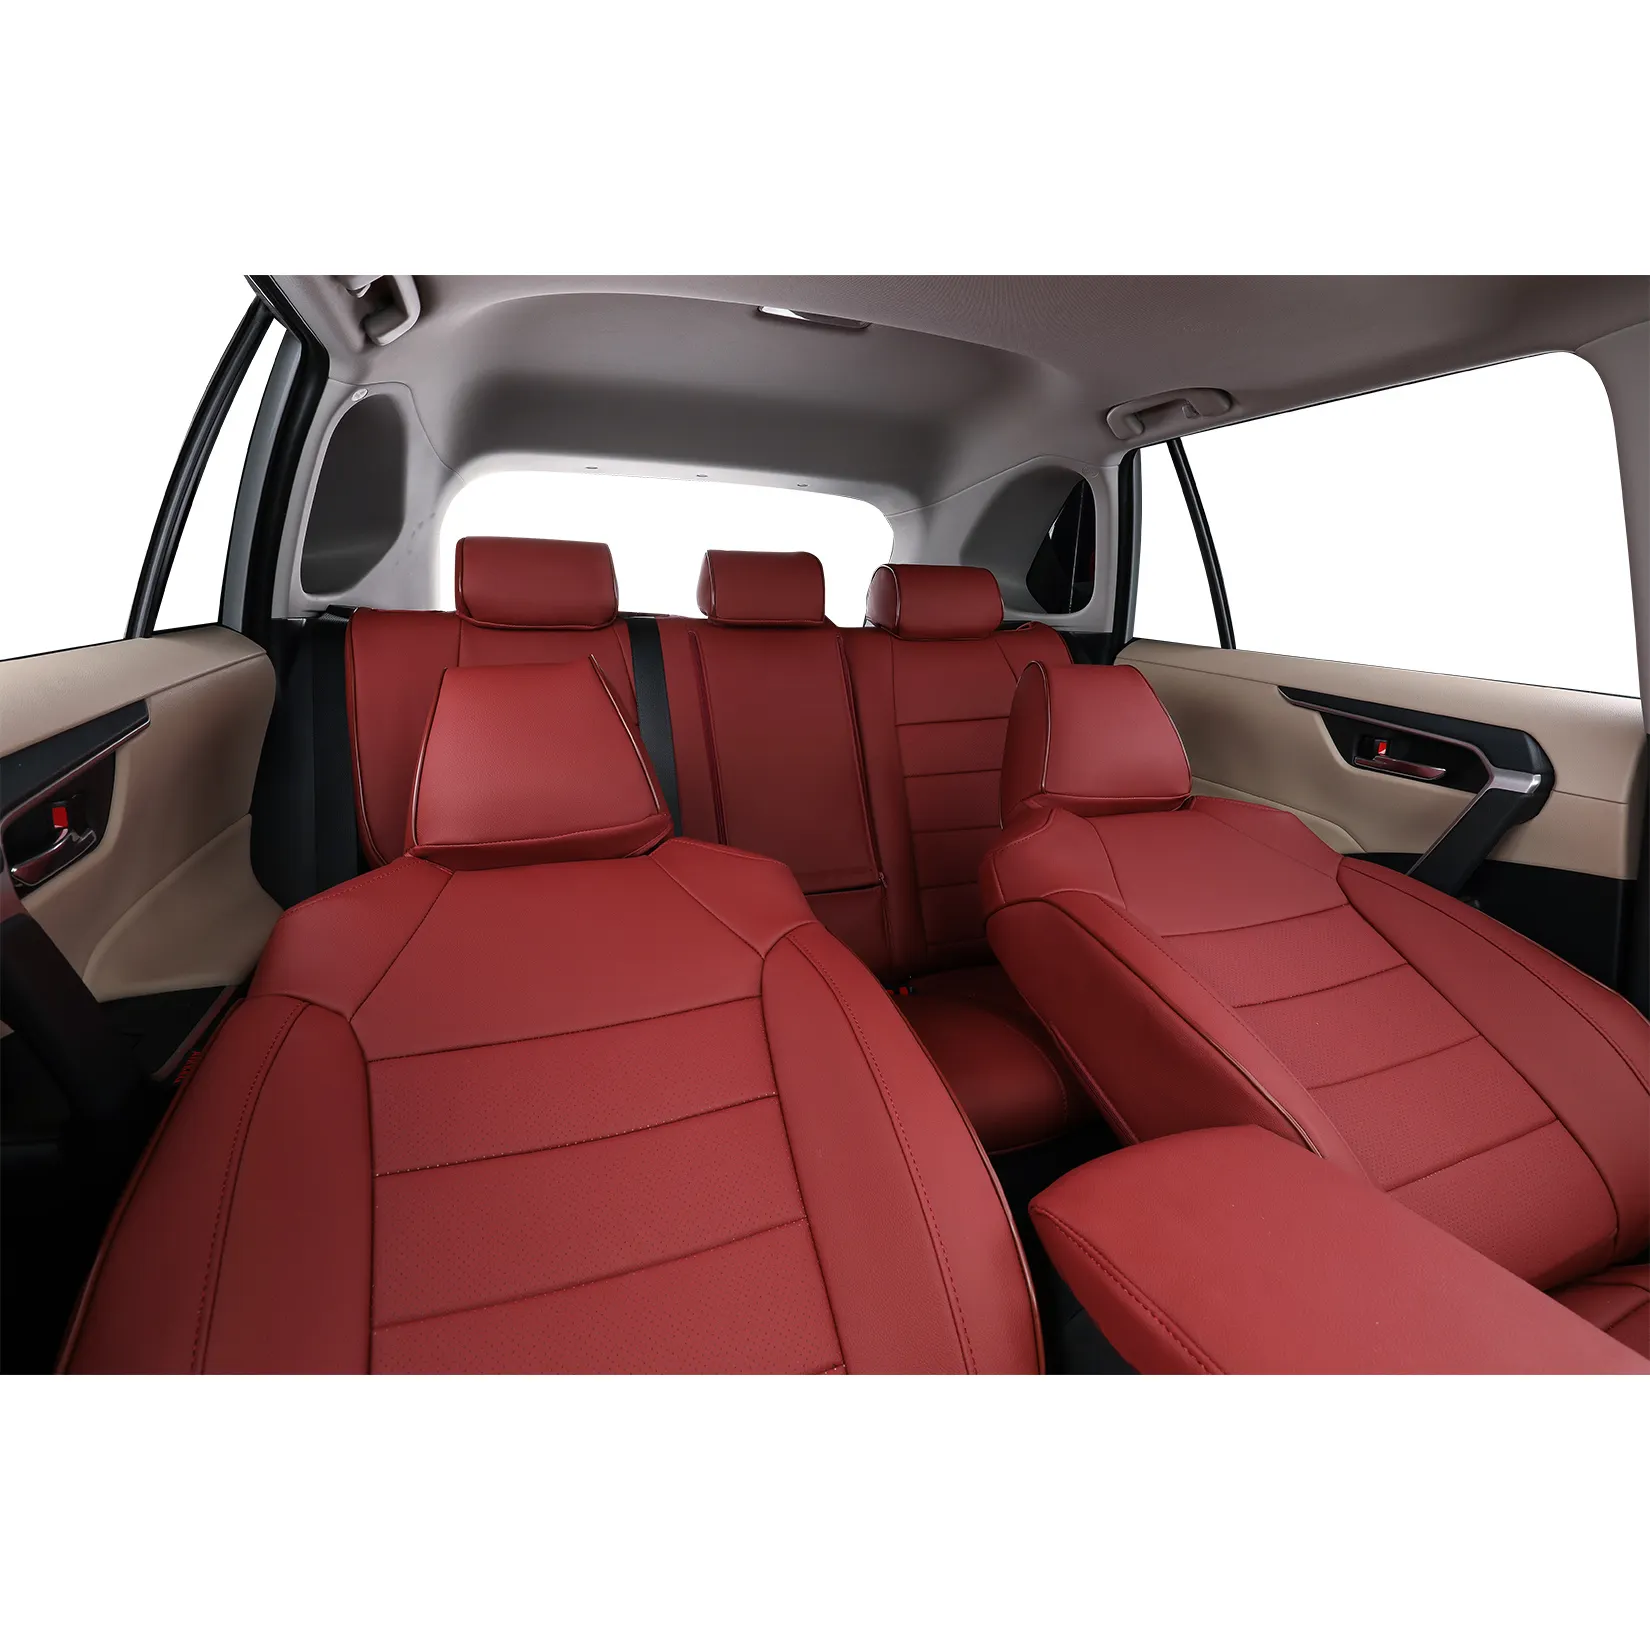 EKR özel yapılmış tam fit araba RAV4 için klozet kapağı s, premium smelless solven ücretsiz deri koltuk kılıfı klozet kapağı araba için